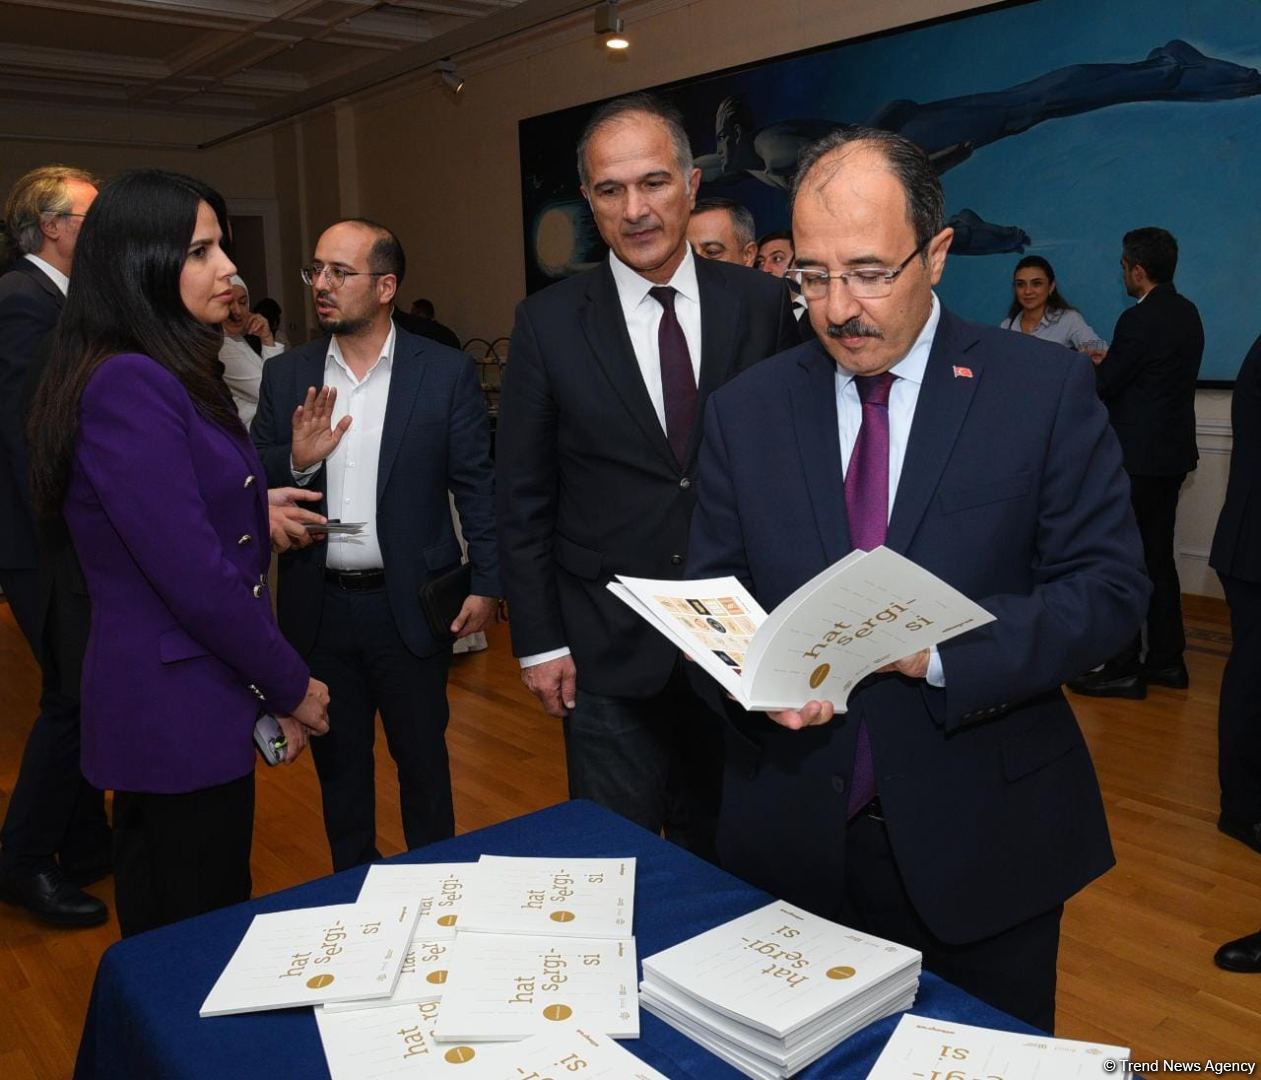 В Баку состоялось торжественное открытие выставки “Xətt Sənəti”, организованной Albayrak Group и АМИ Trend (ФОТО)